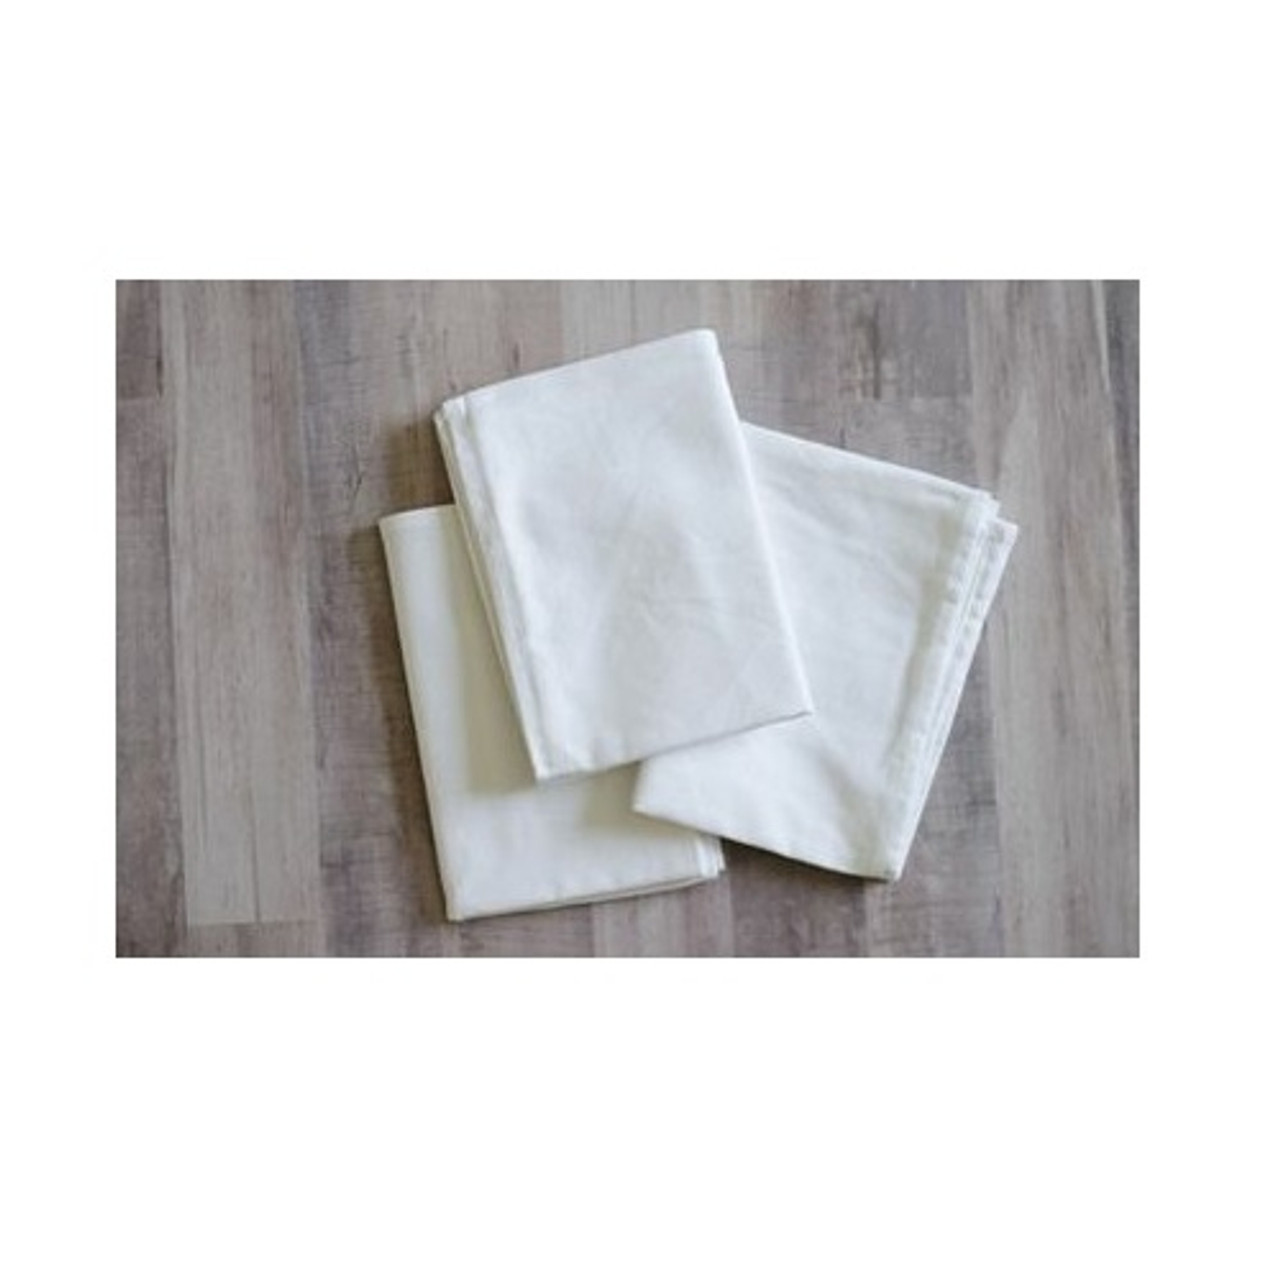 Tea Towel - Embroidery Blanks - KimberBell - White - 3 pk